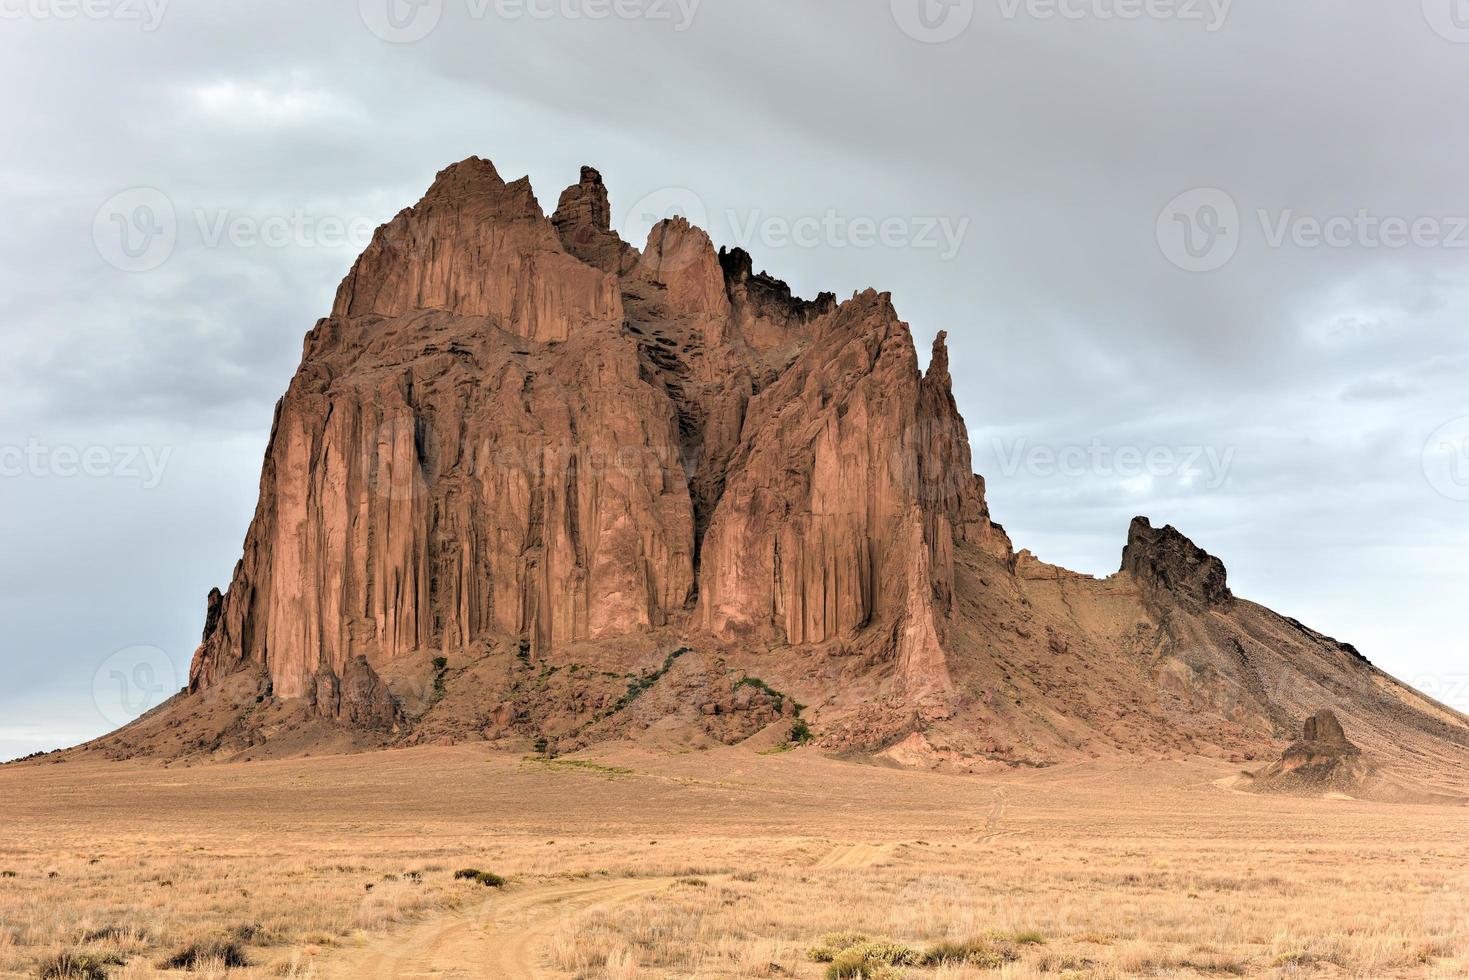 shiprock es un monadnock que se eleva casi 1,583 pies sobre la planicie desértica alta de la nación navajo en el condado de san juan, nuevo méxico, estados unidos. foto